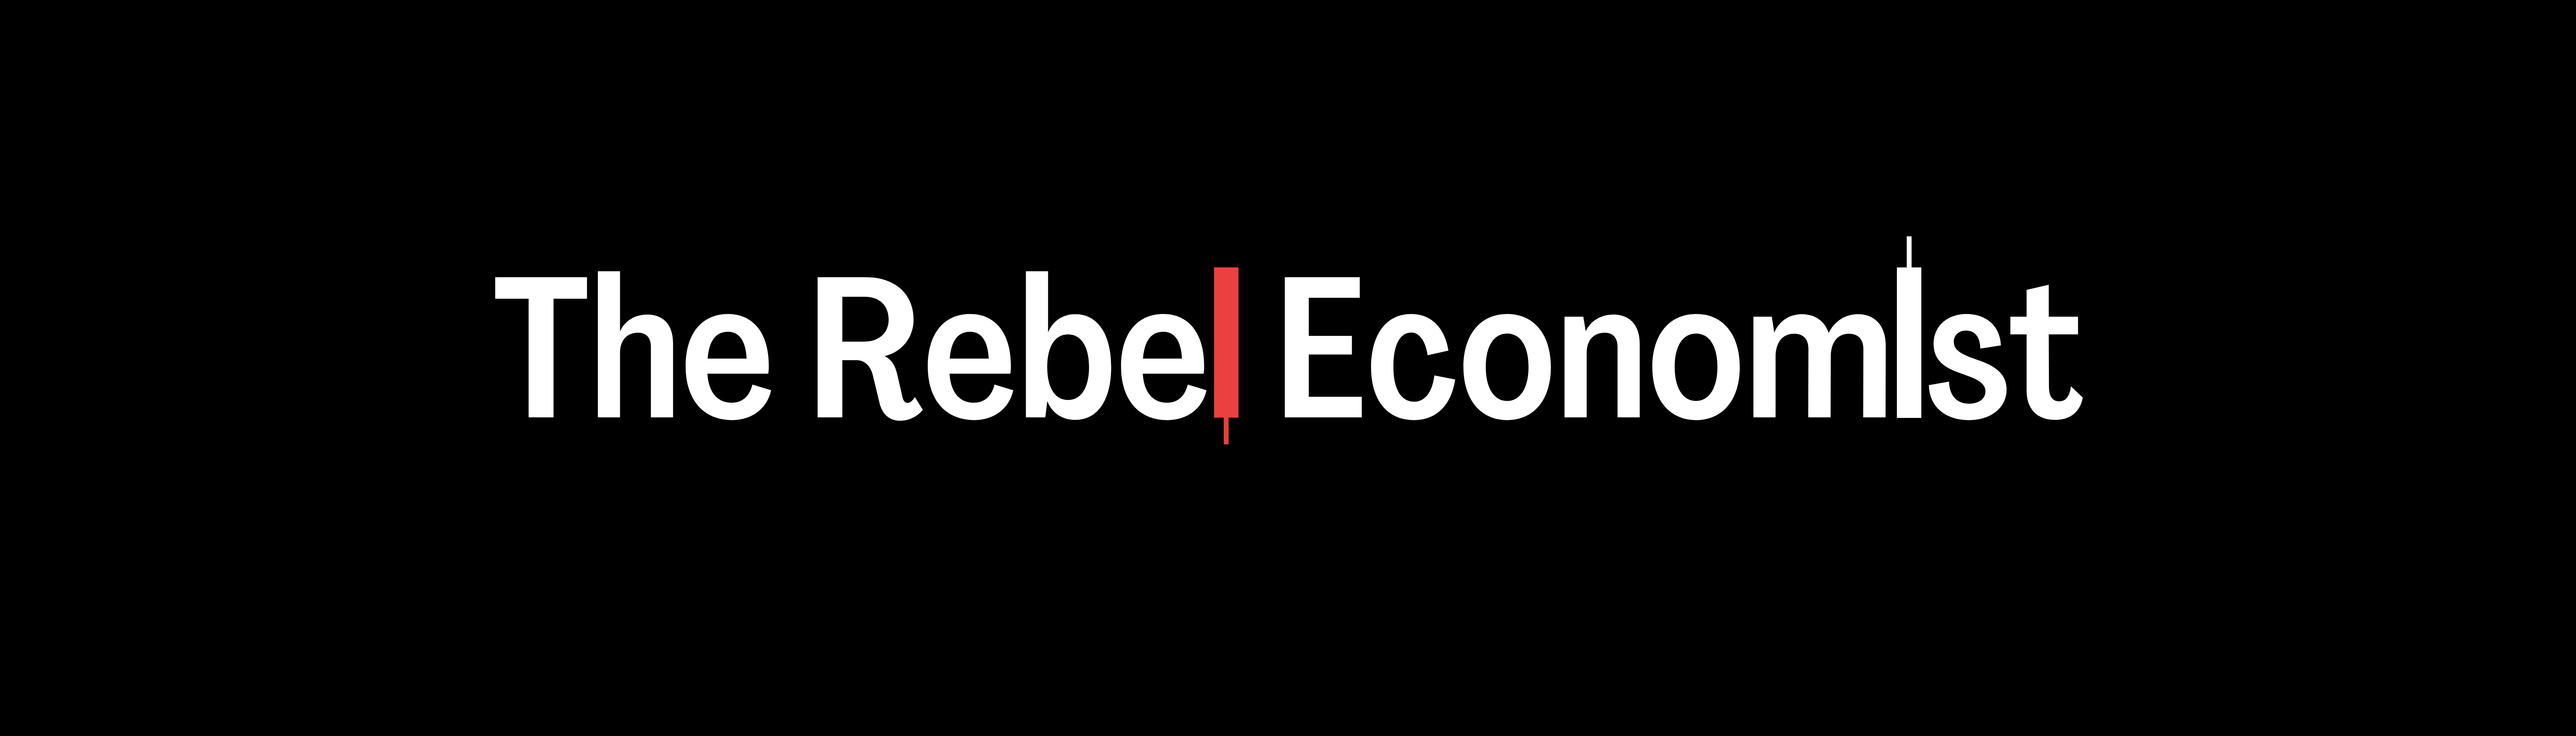 The Rebel Economist